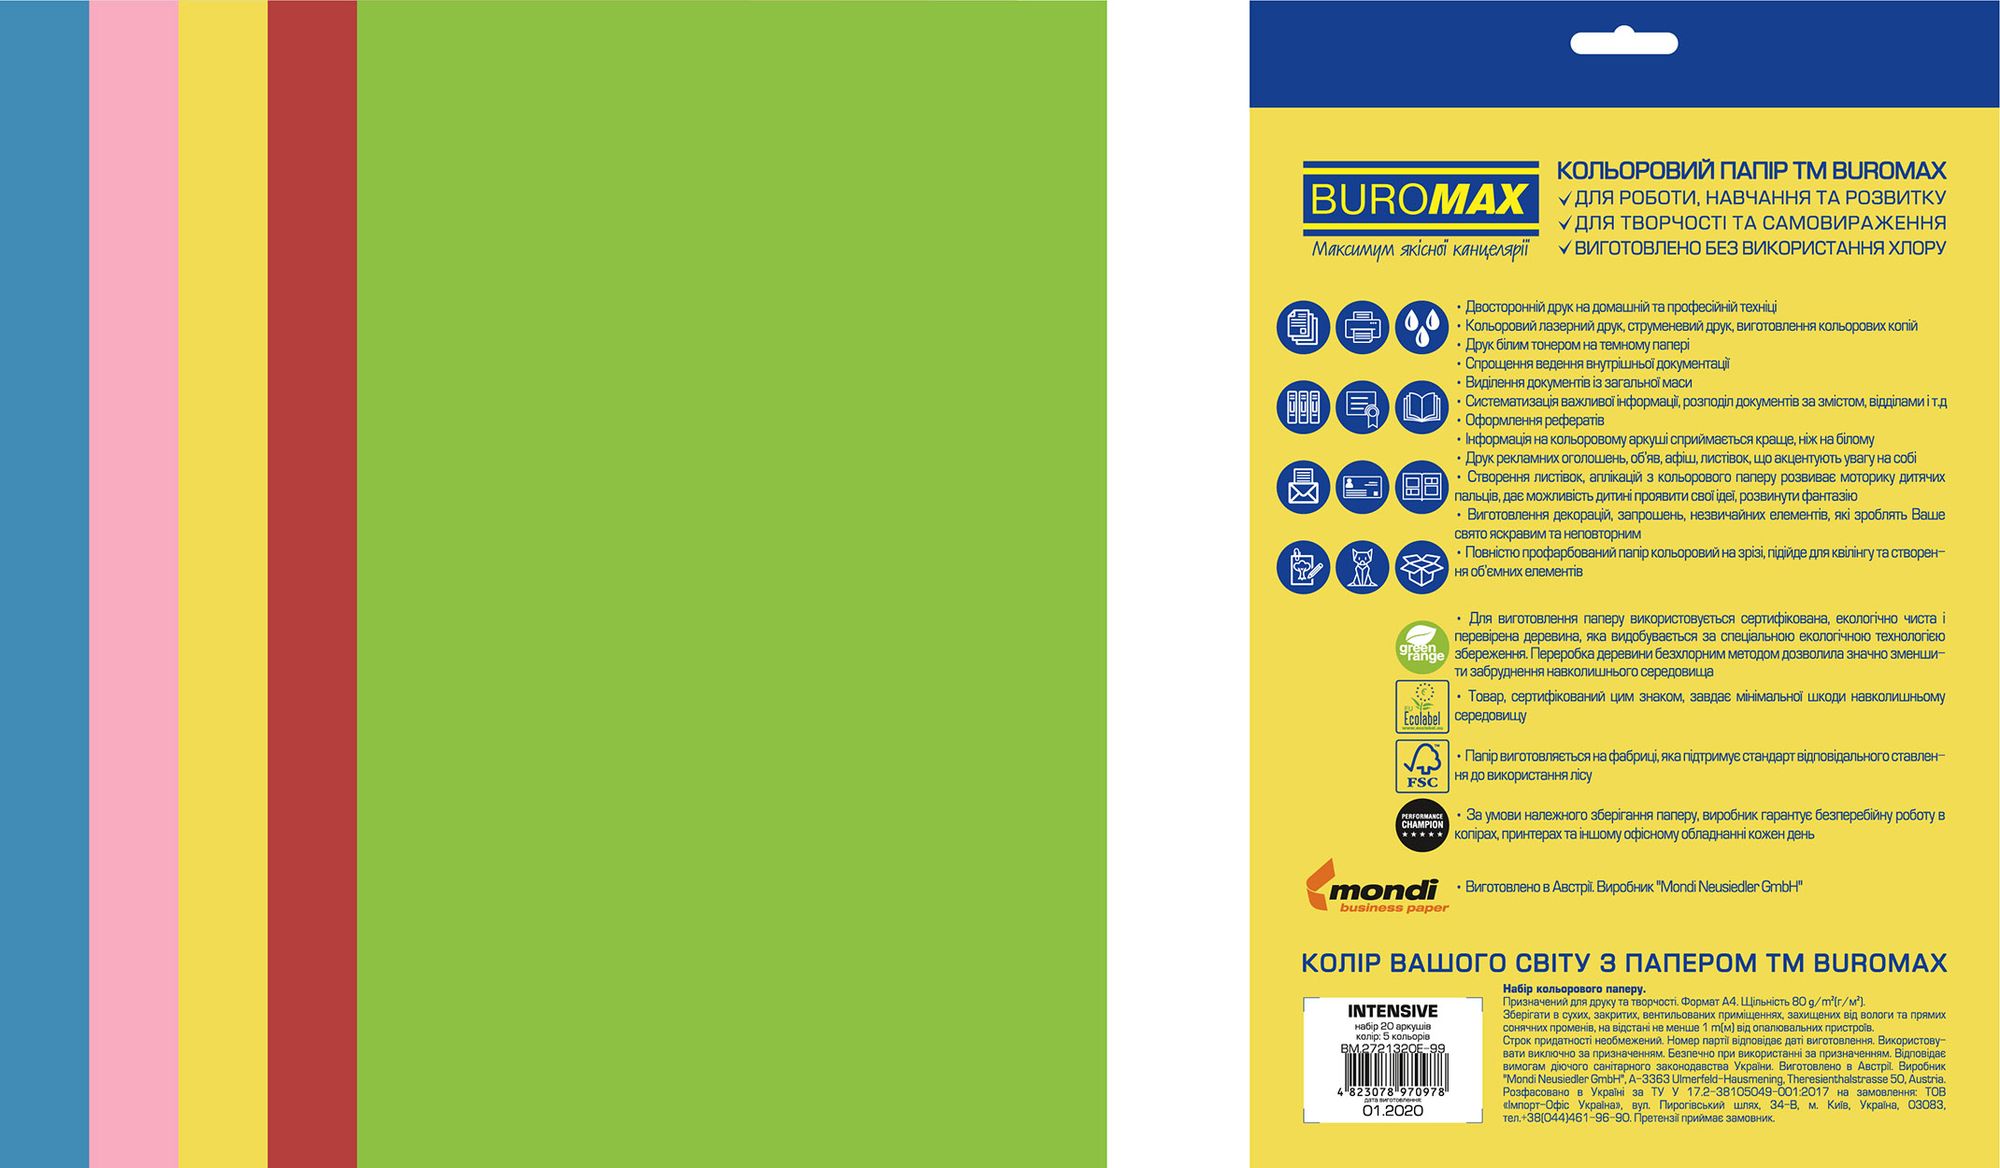  цветной бумаги Euromax А4, 80г/м2, 5 цветов, 20 листов, BUROMAX .